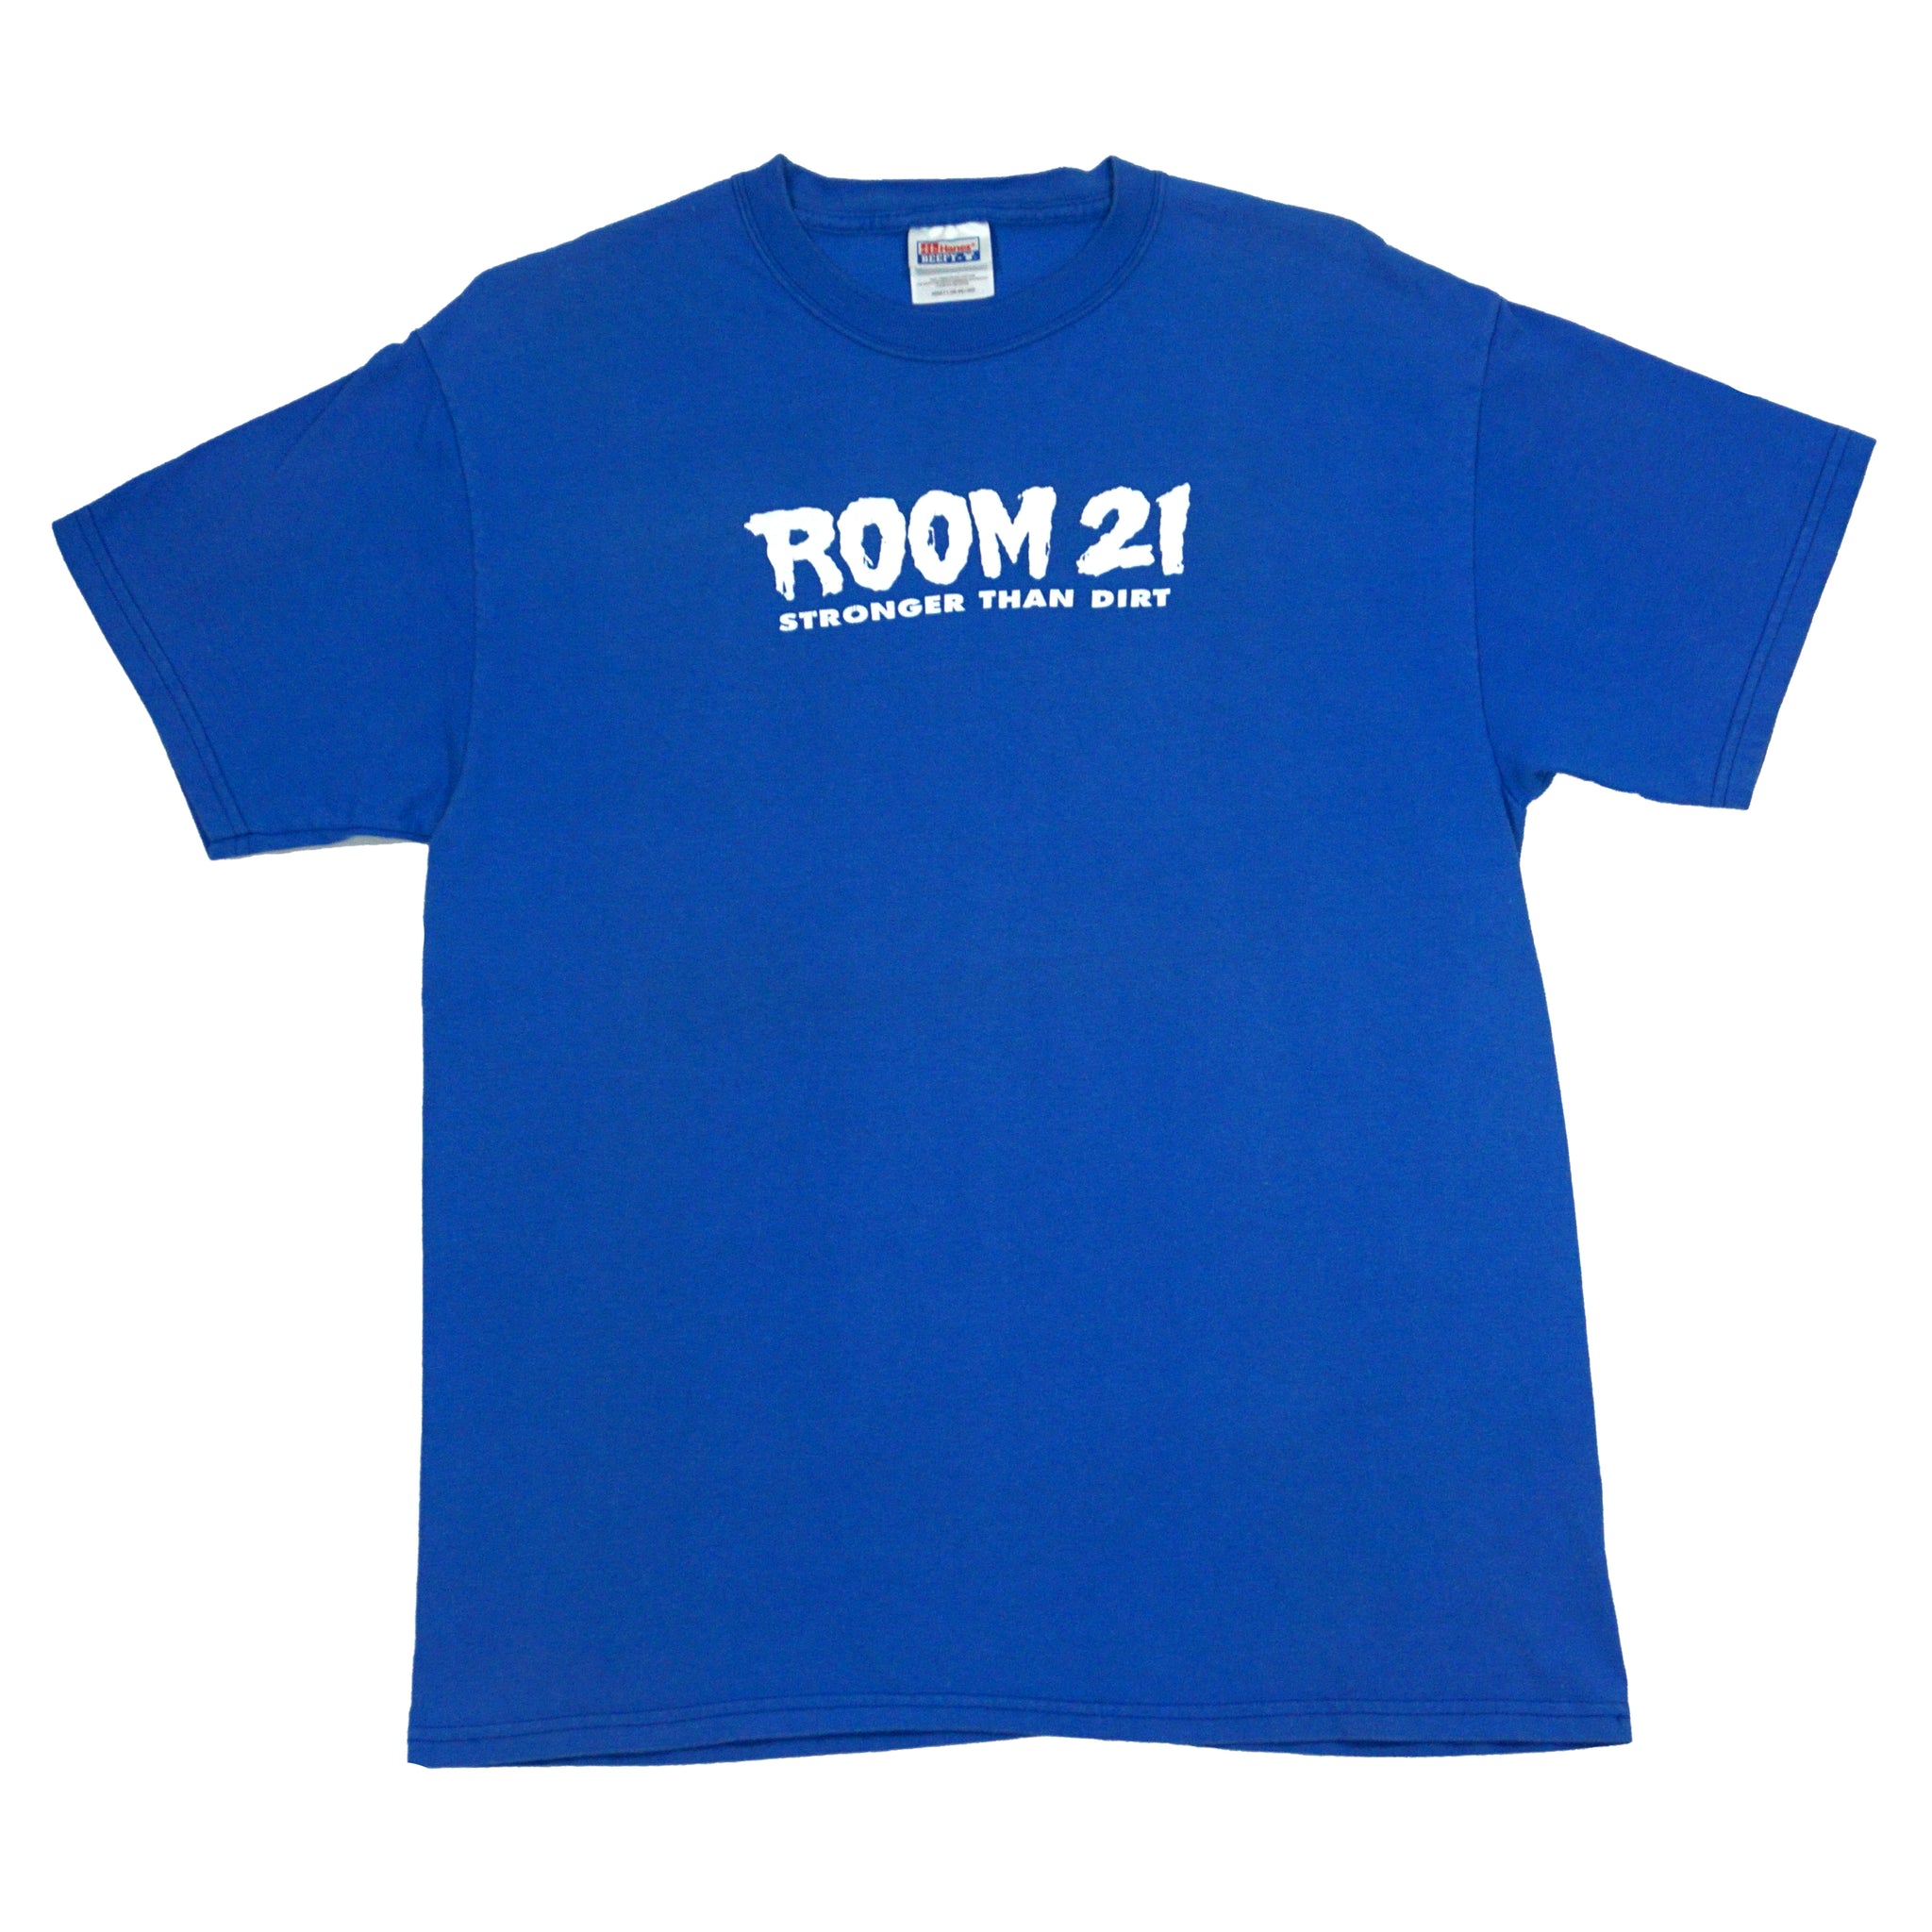 Room 21 - Stronger Than Dirt Shirt (L)